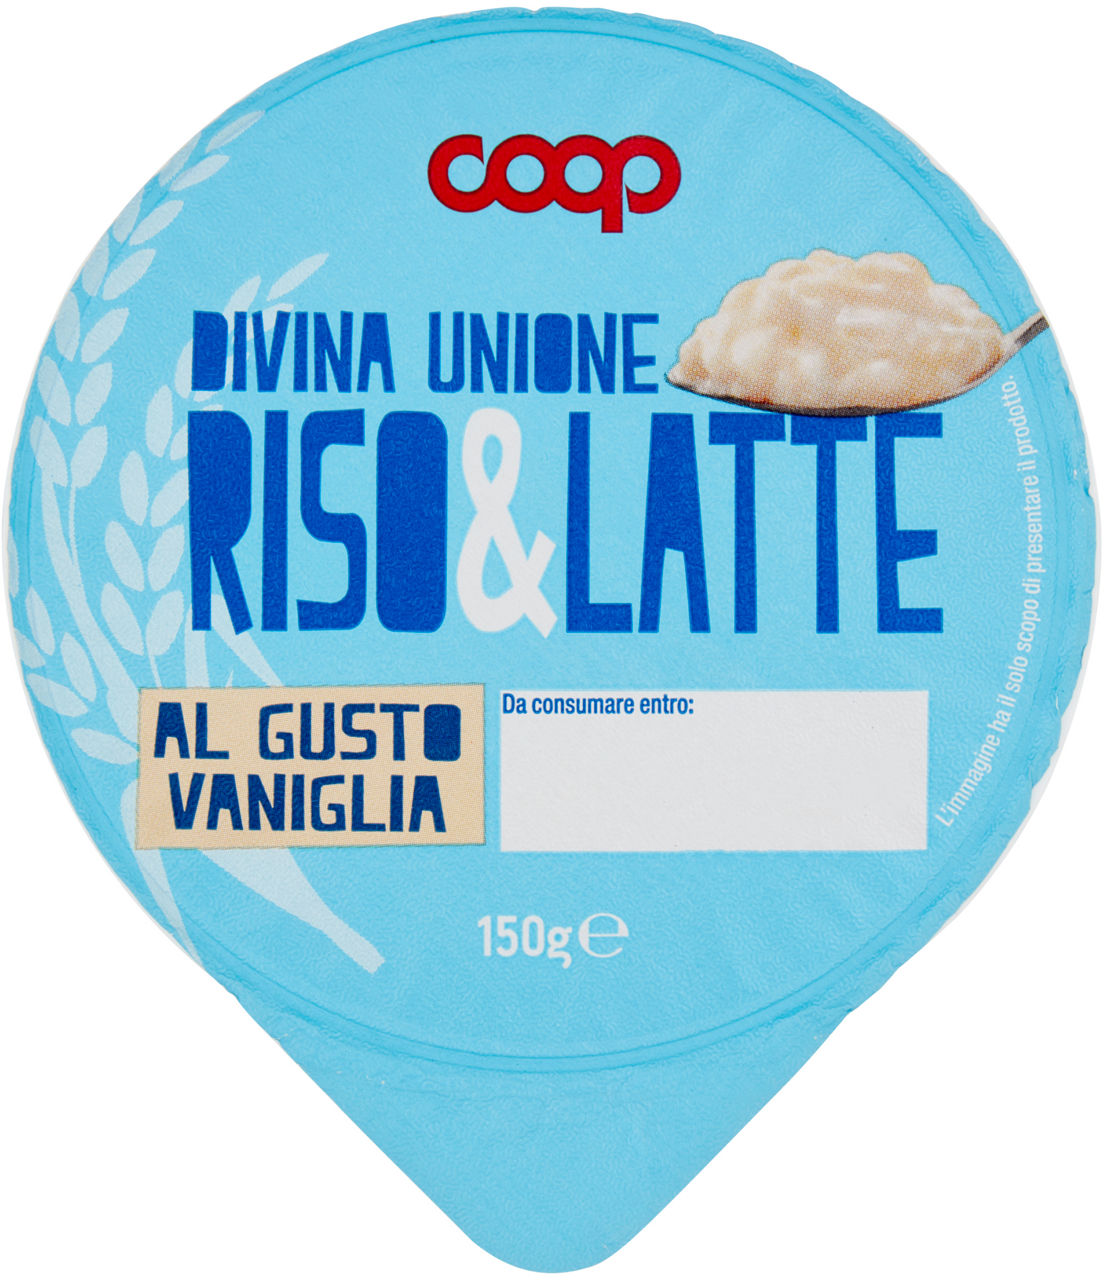 Dessert risolatte coop vaniglia g 150